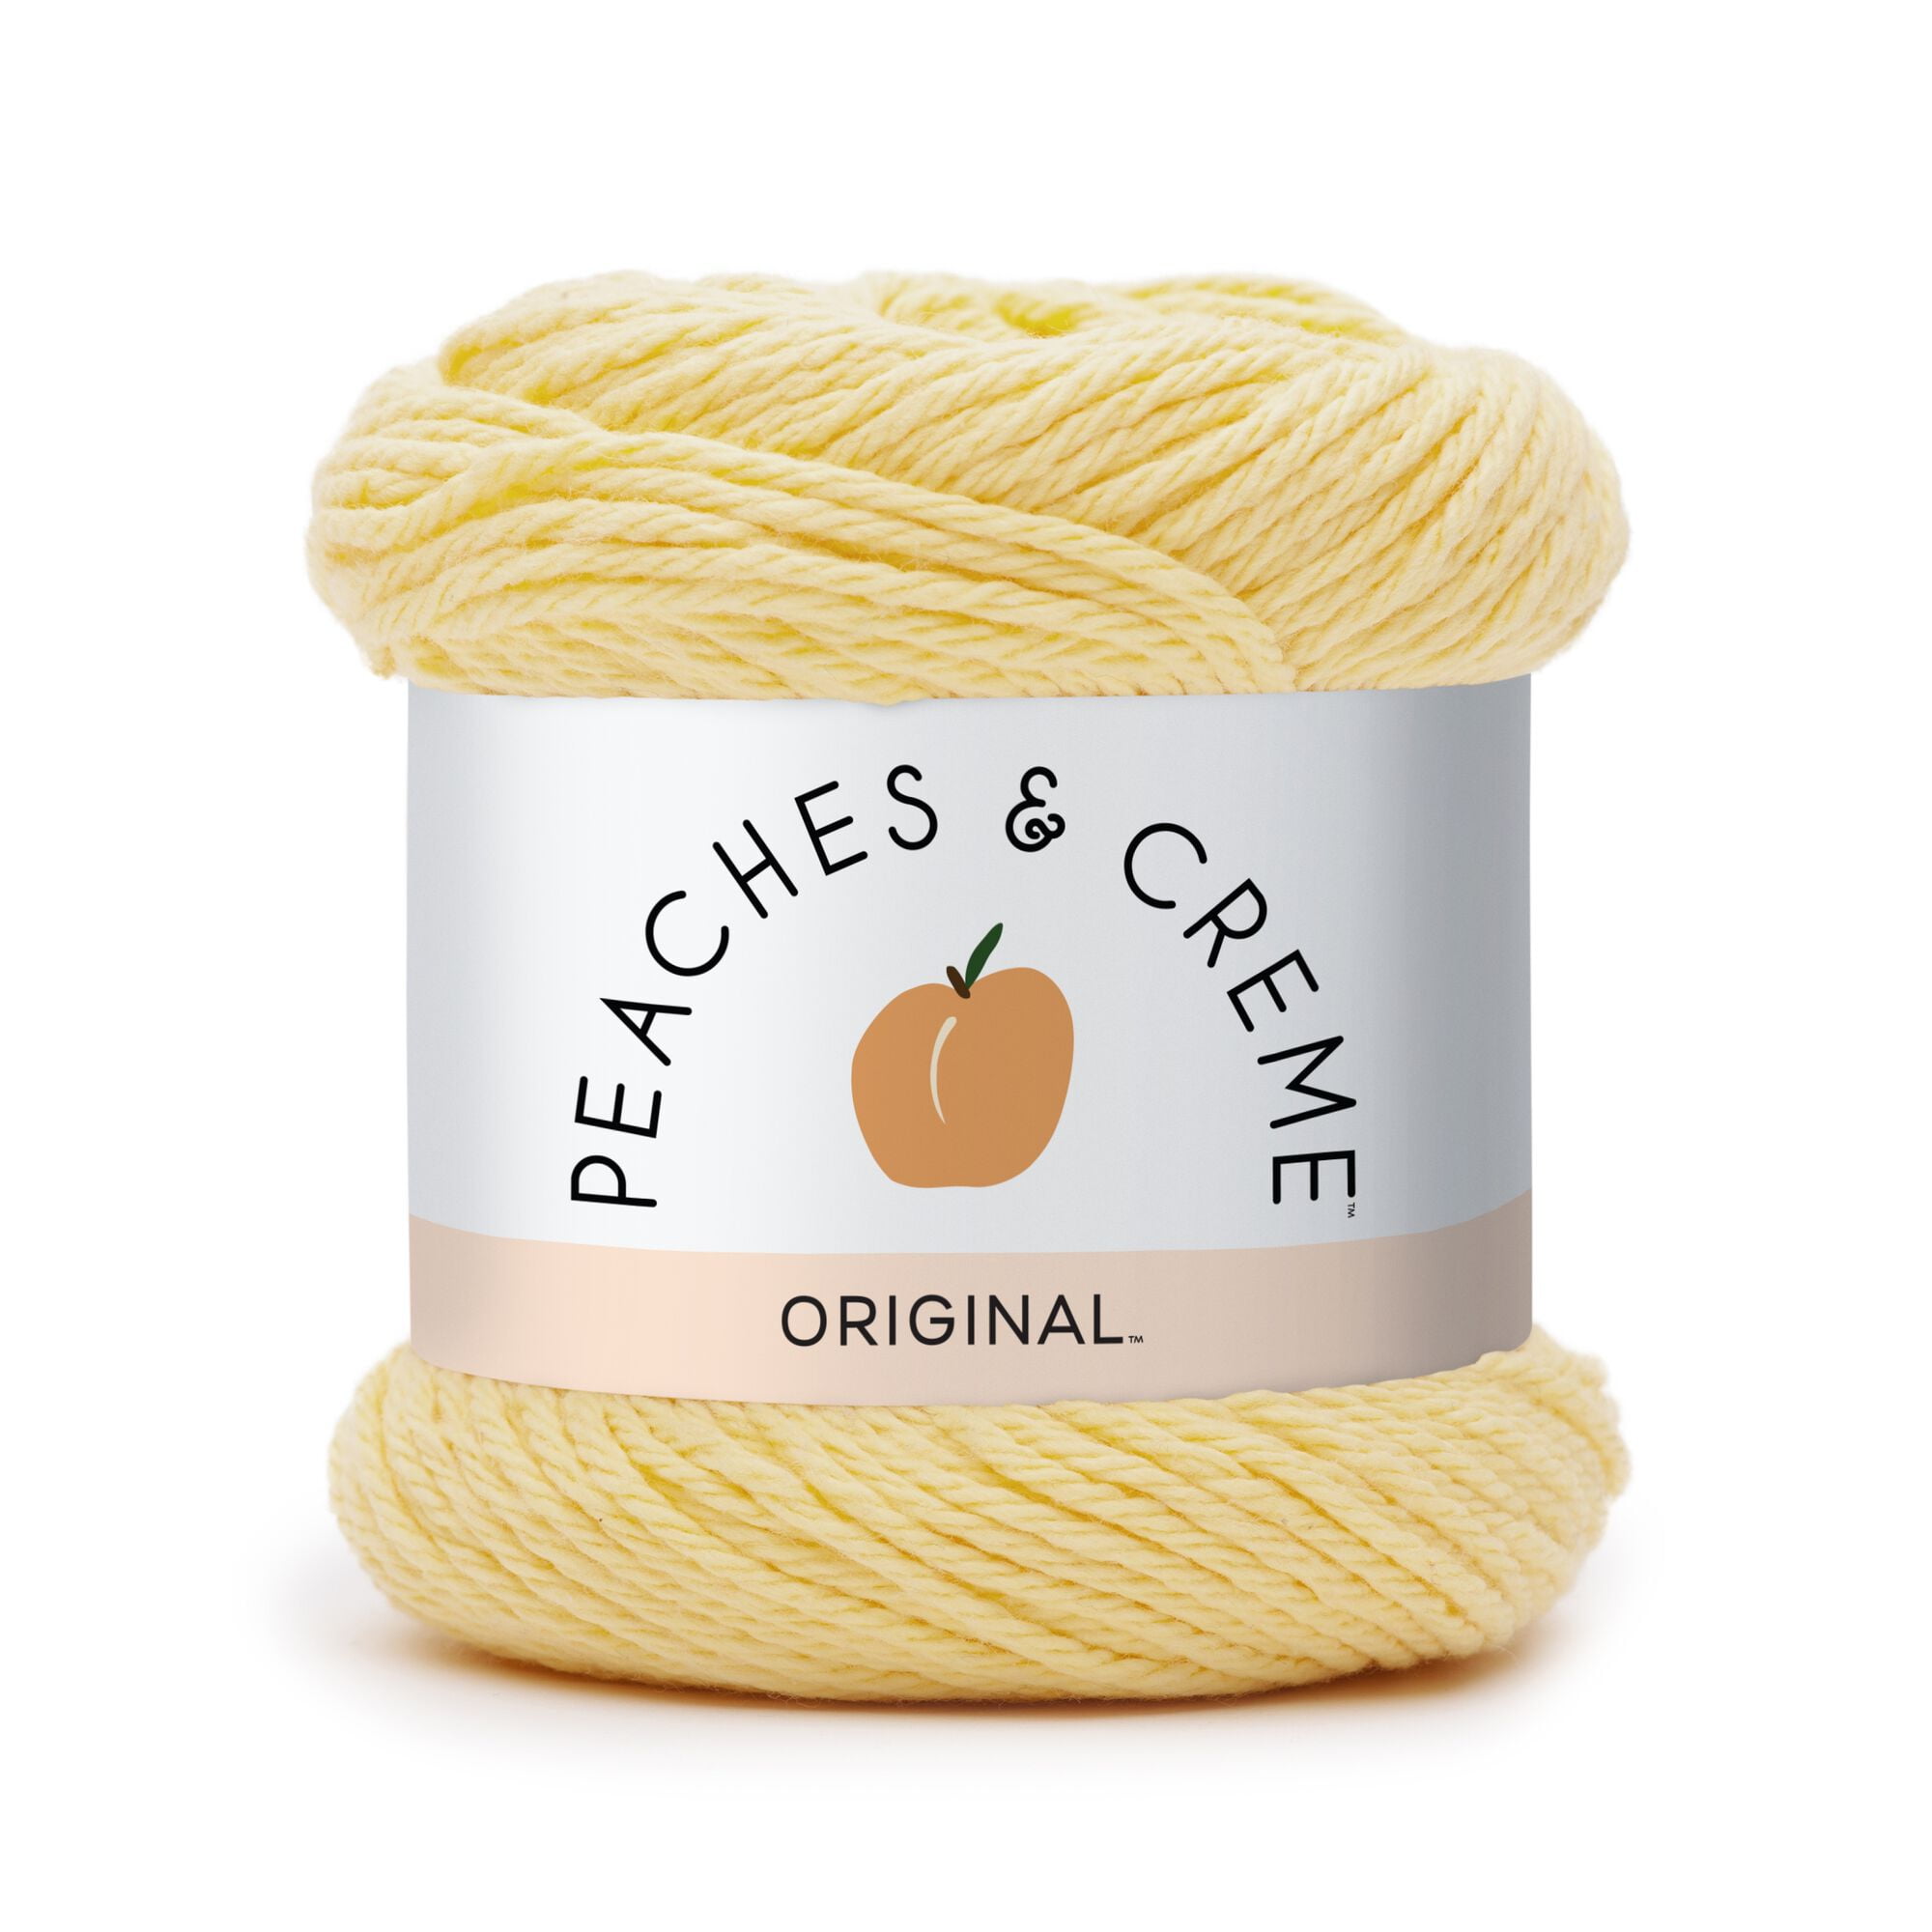 Peaches & Creme (Cream) Cotton Yarn Gold 2.5 oz. Color 11605